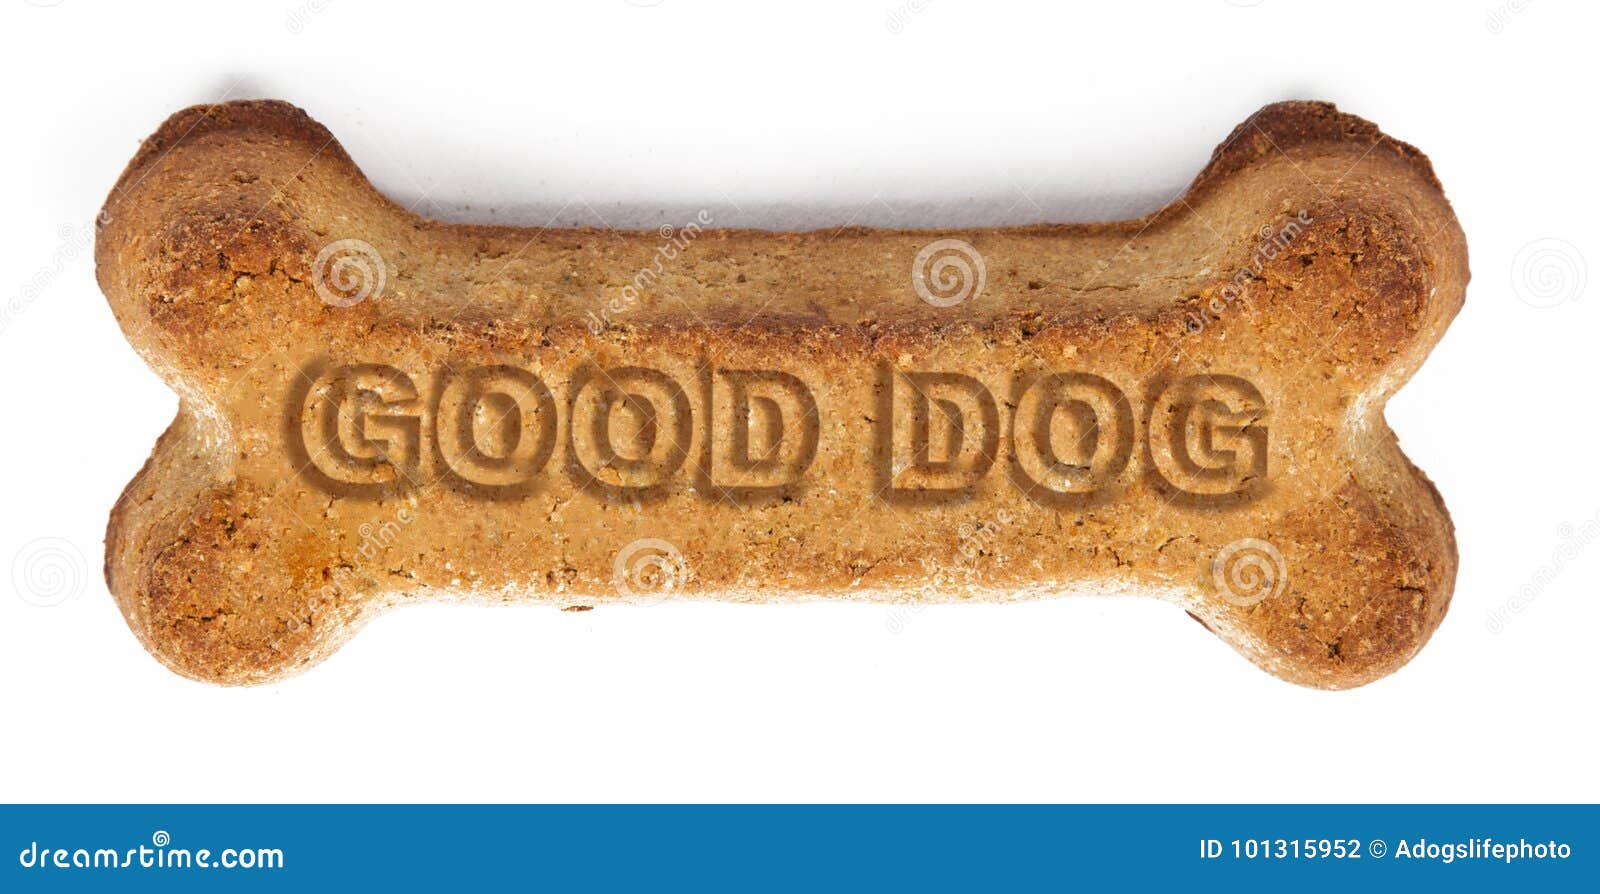 good dog reward biscuit